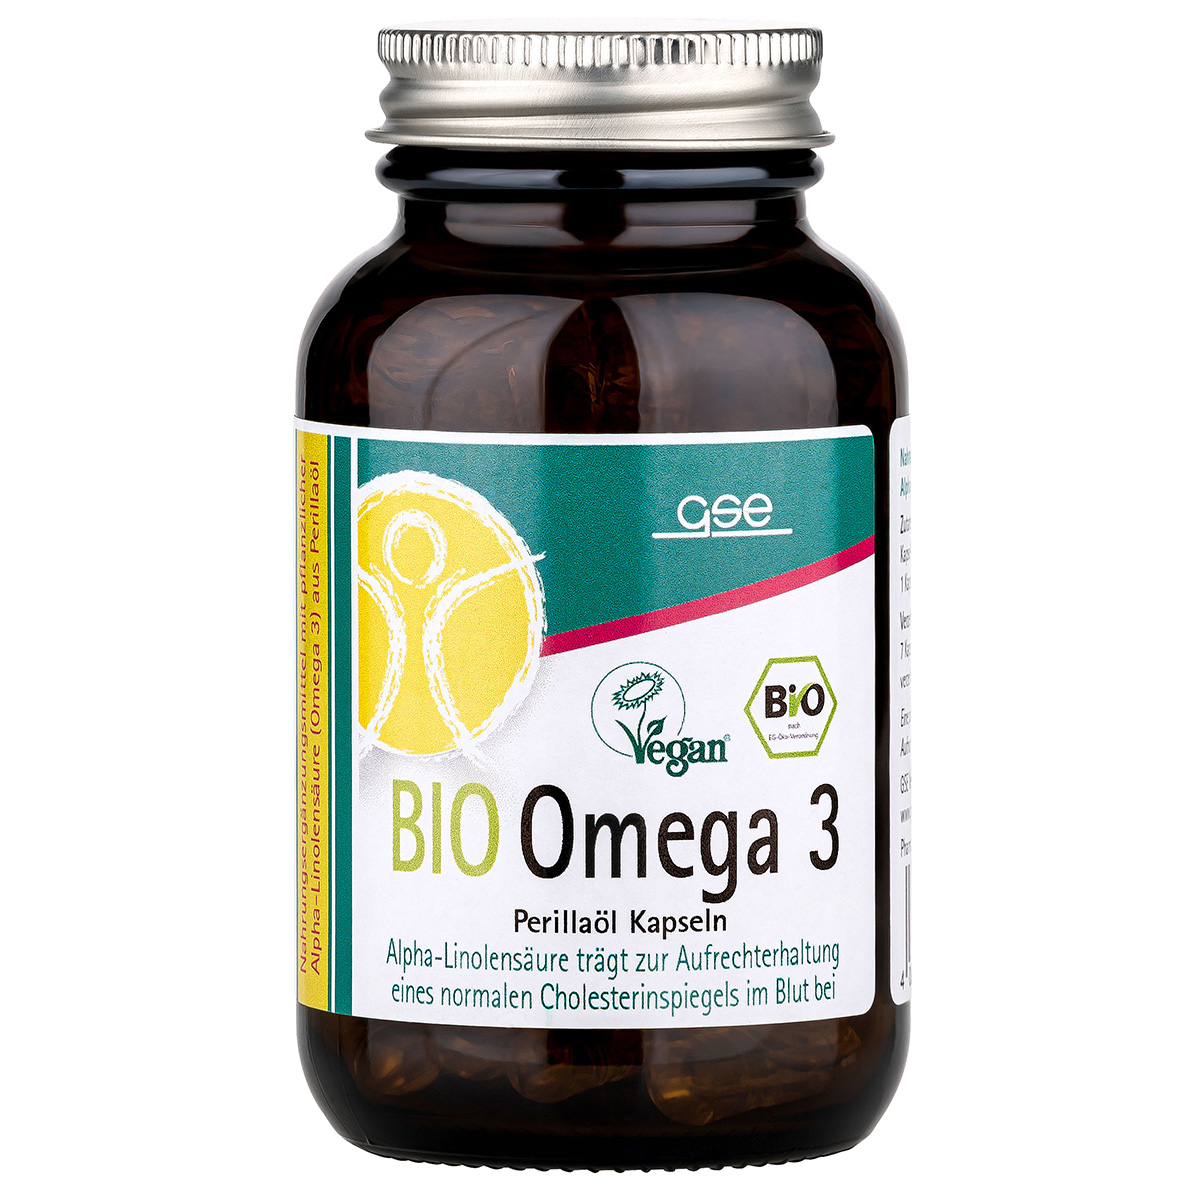 Omega 3 - Perillaöl Kapseln (Bio)